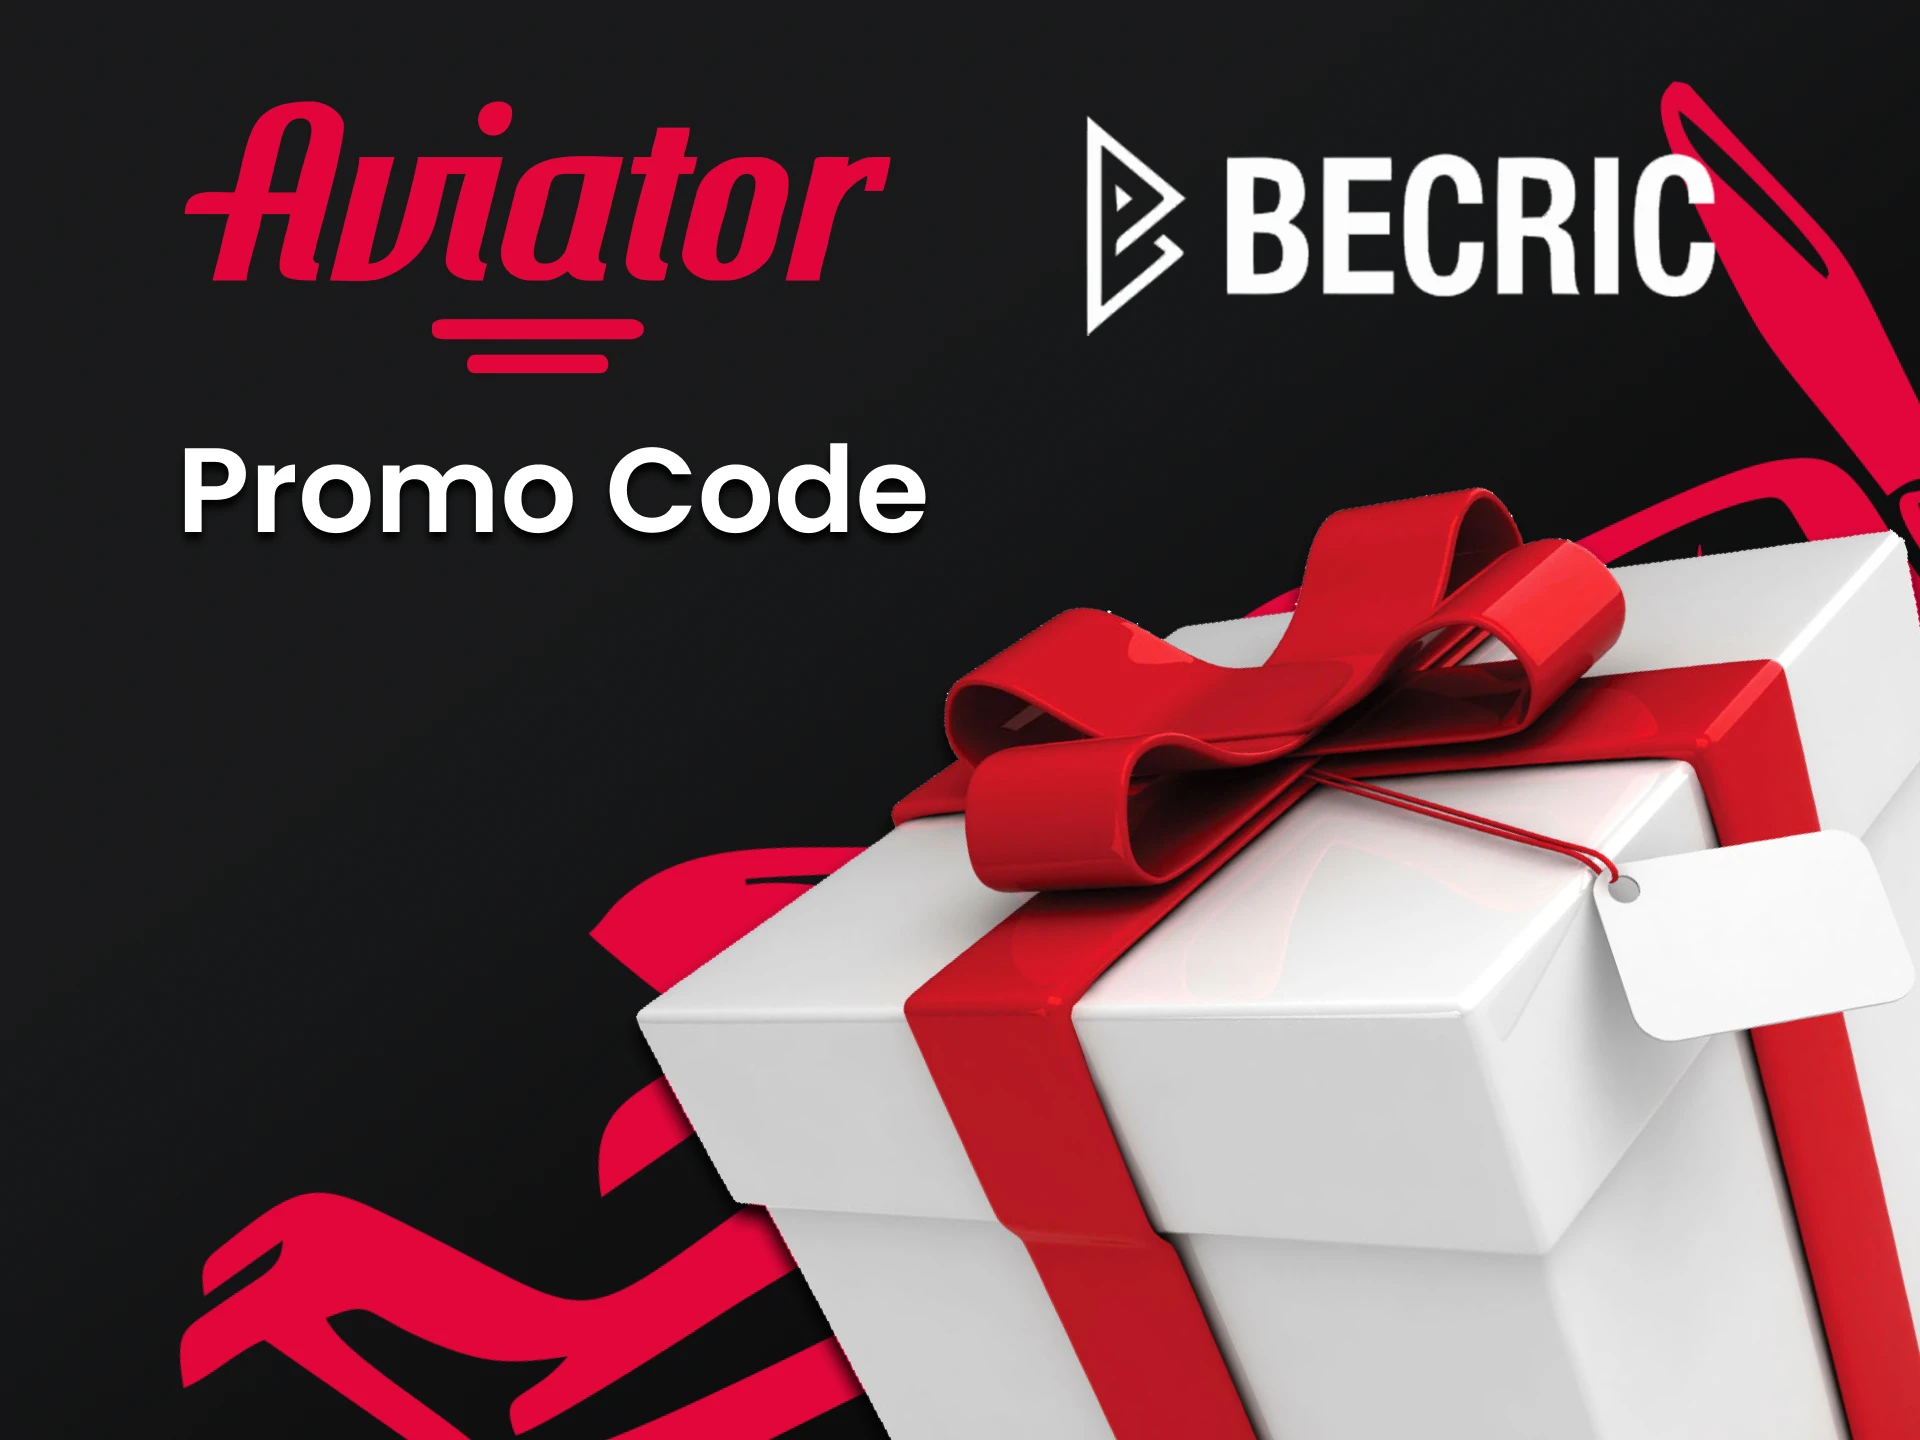 Use o código e ganhe bônus por jogar Avaitor no Becric.